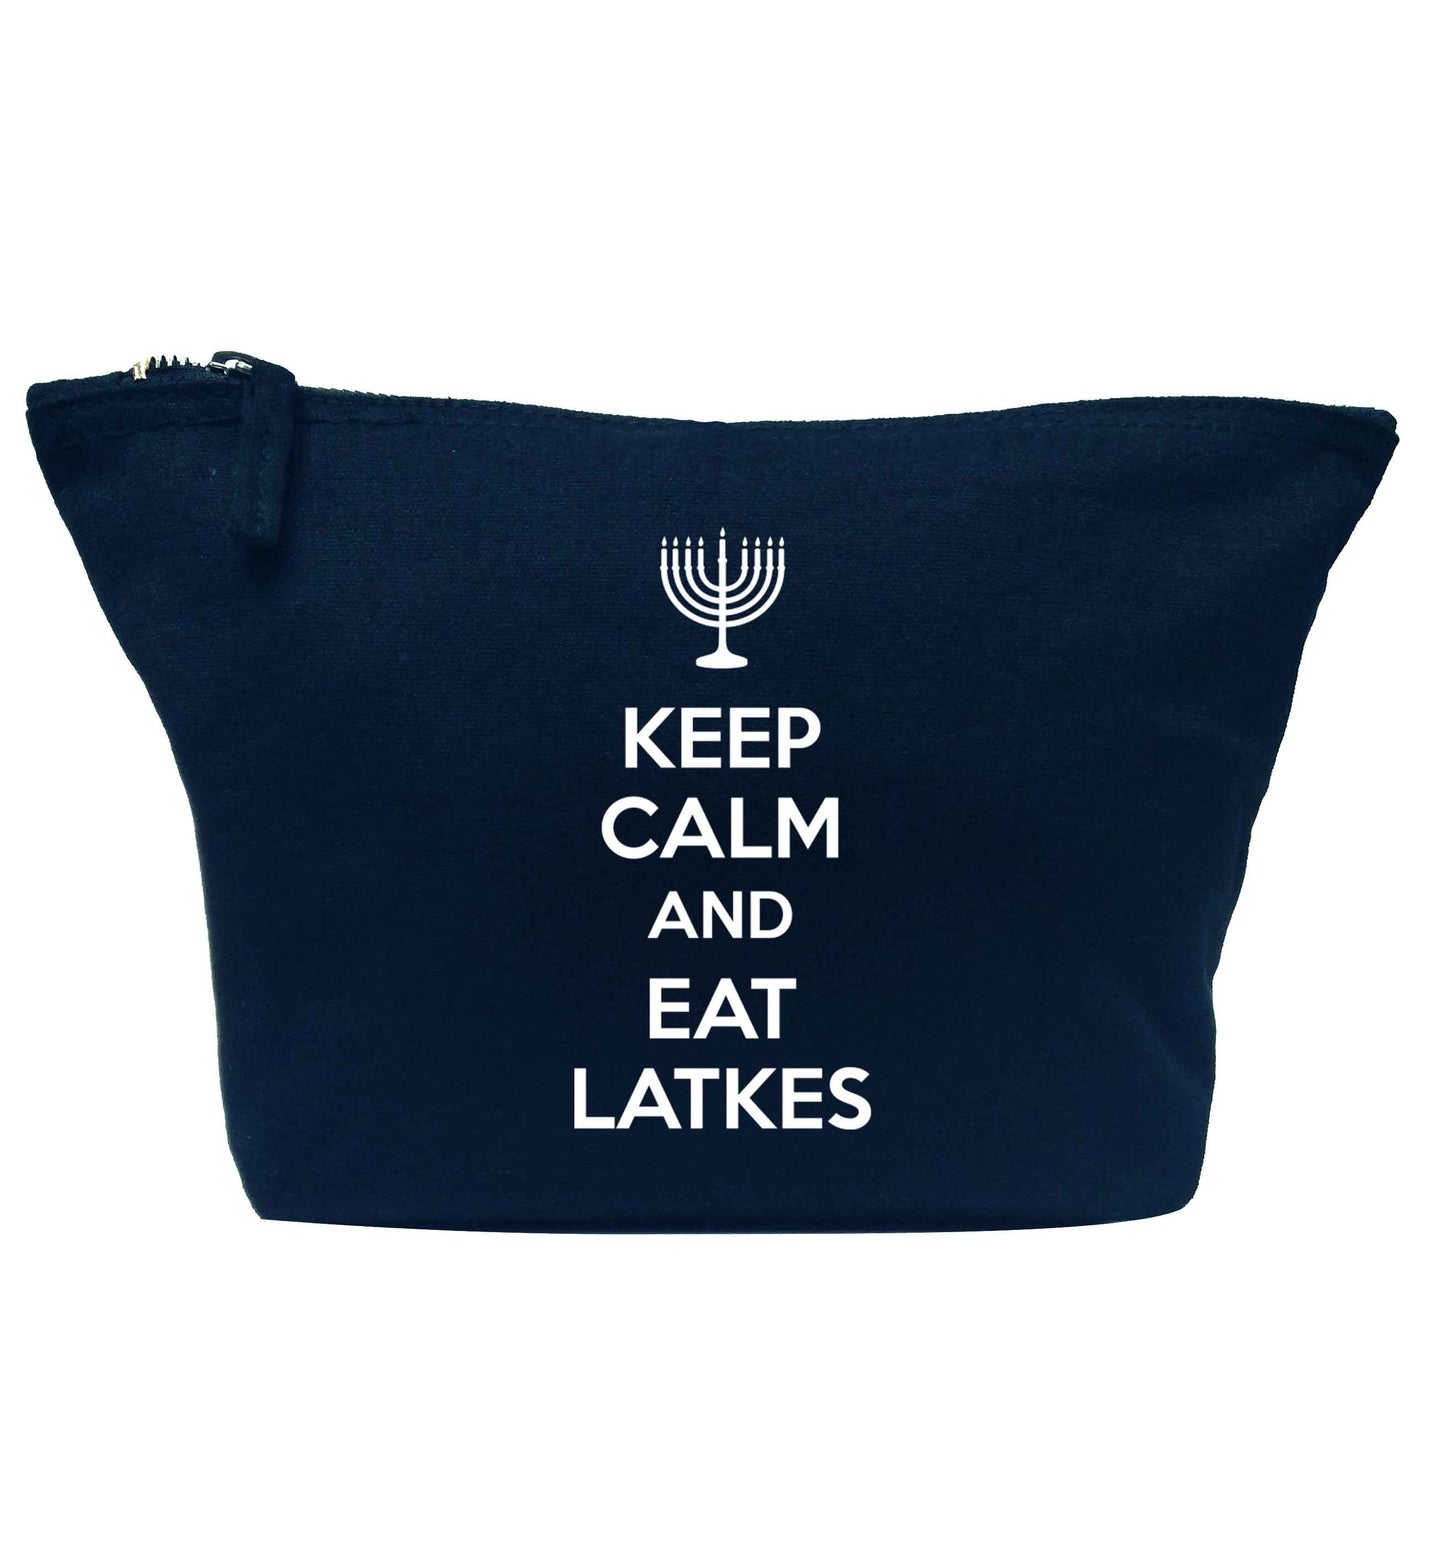 Keep calm and eat latkes navy makeup bag